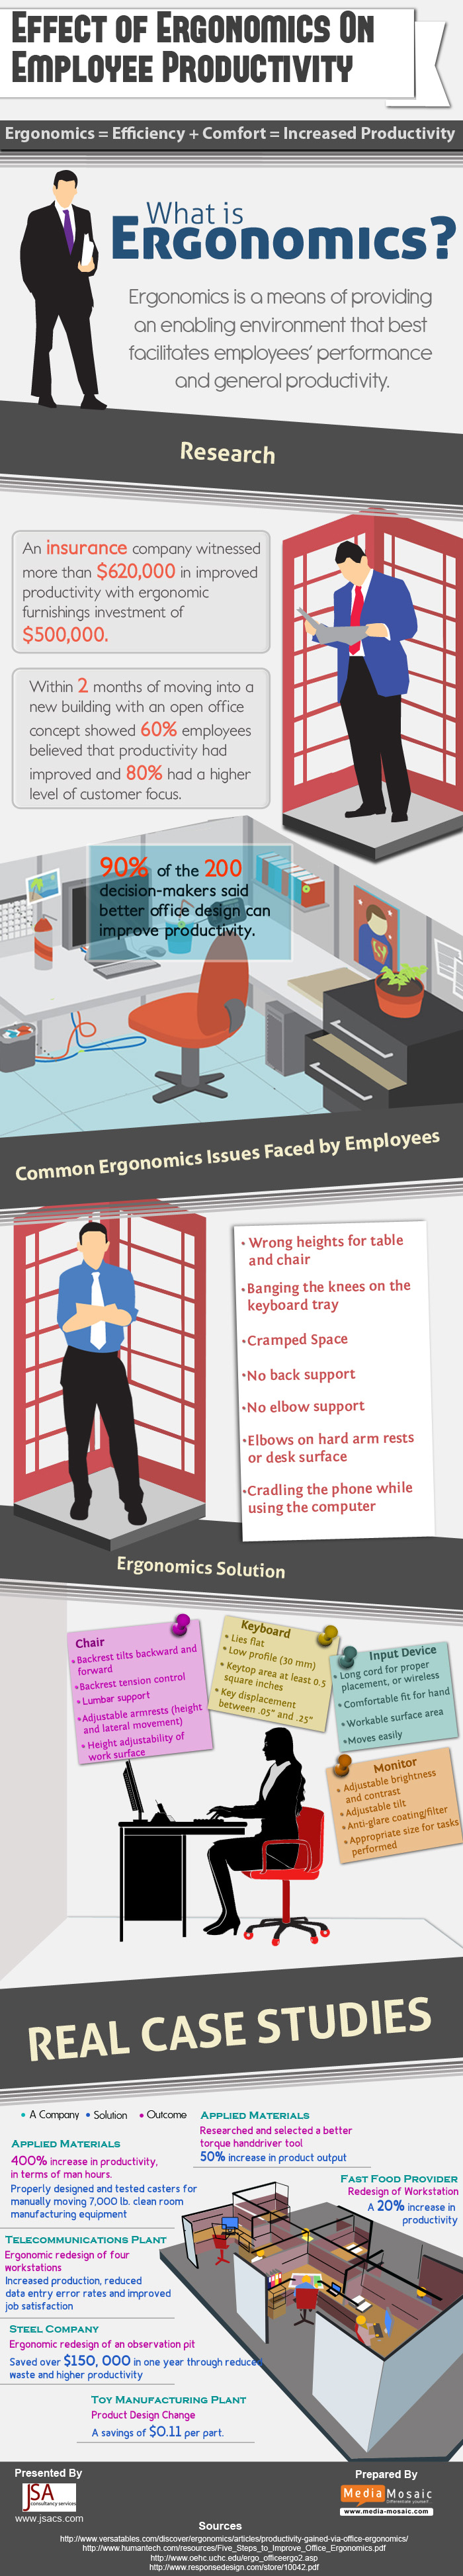 ergonomics infographic